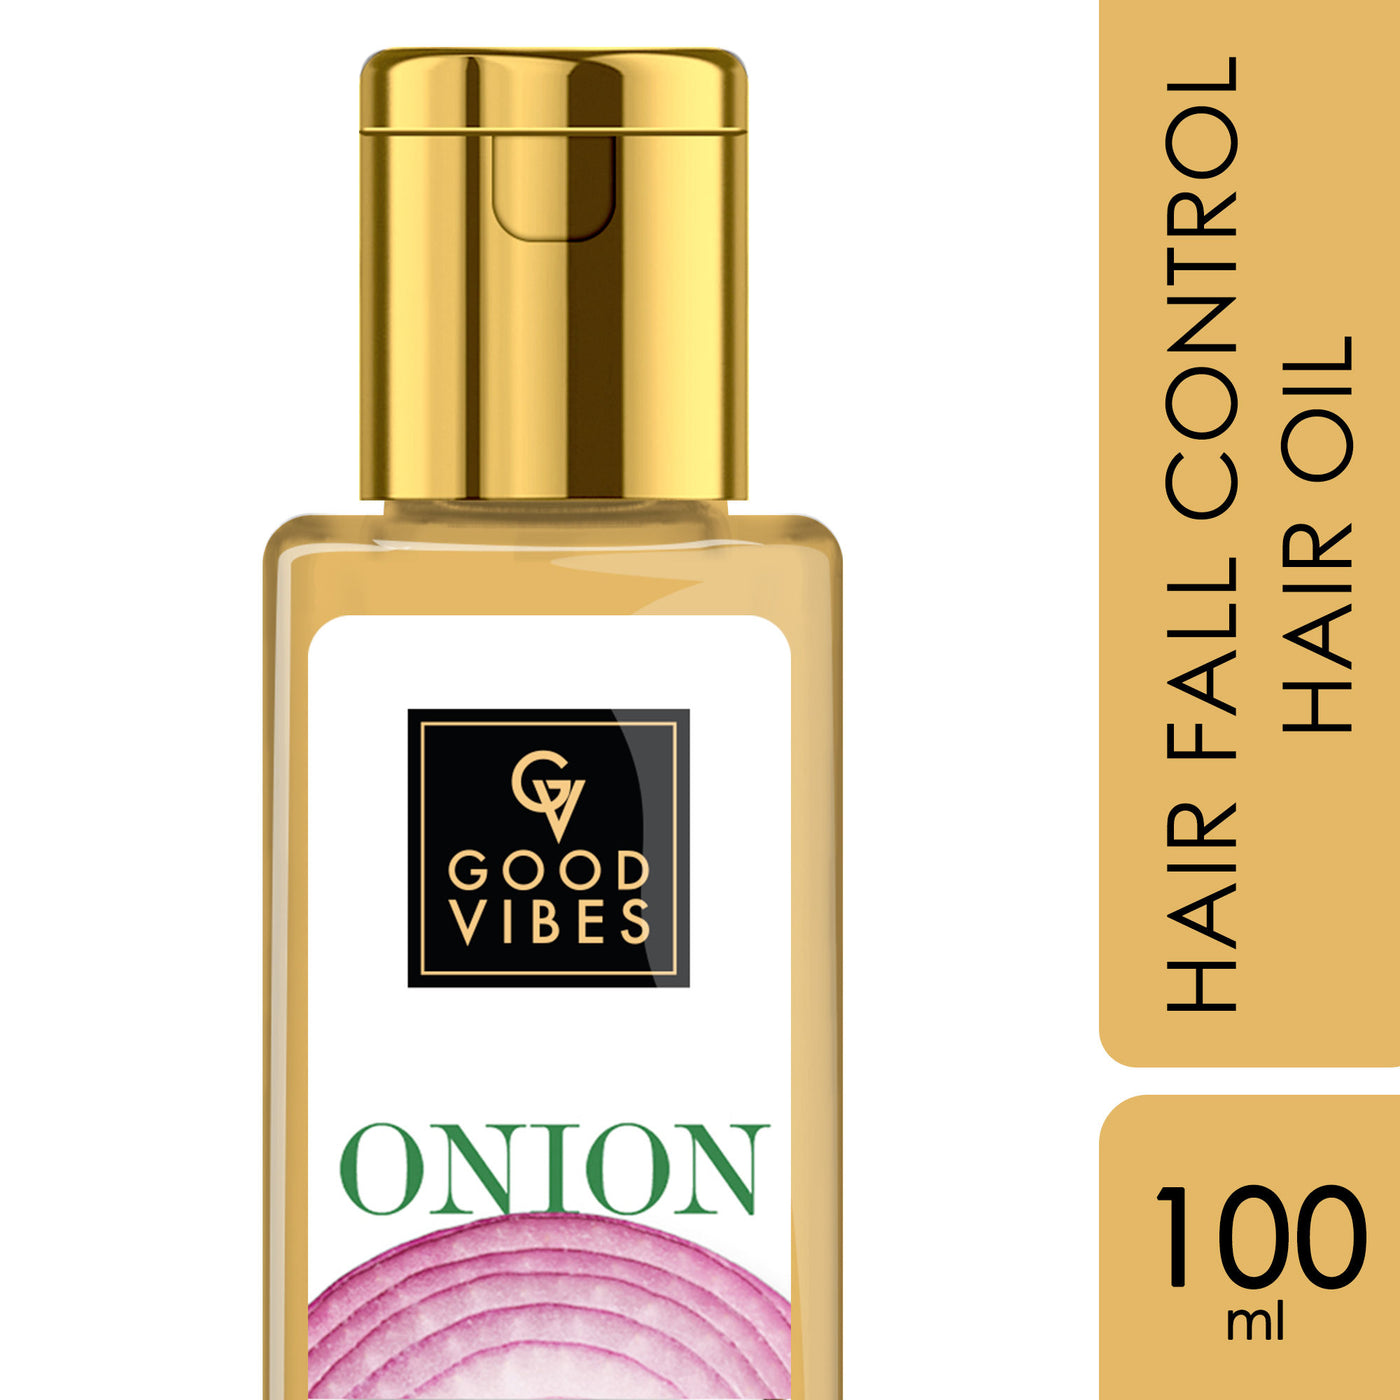 good-vibes-onion-hair-fall-control-hair-oil-100-ml-27-1